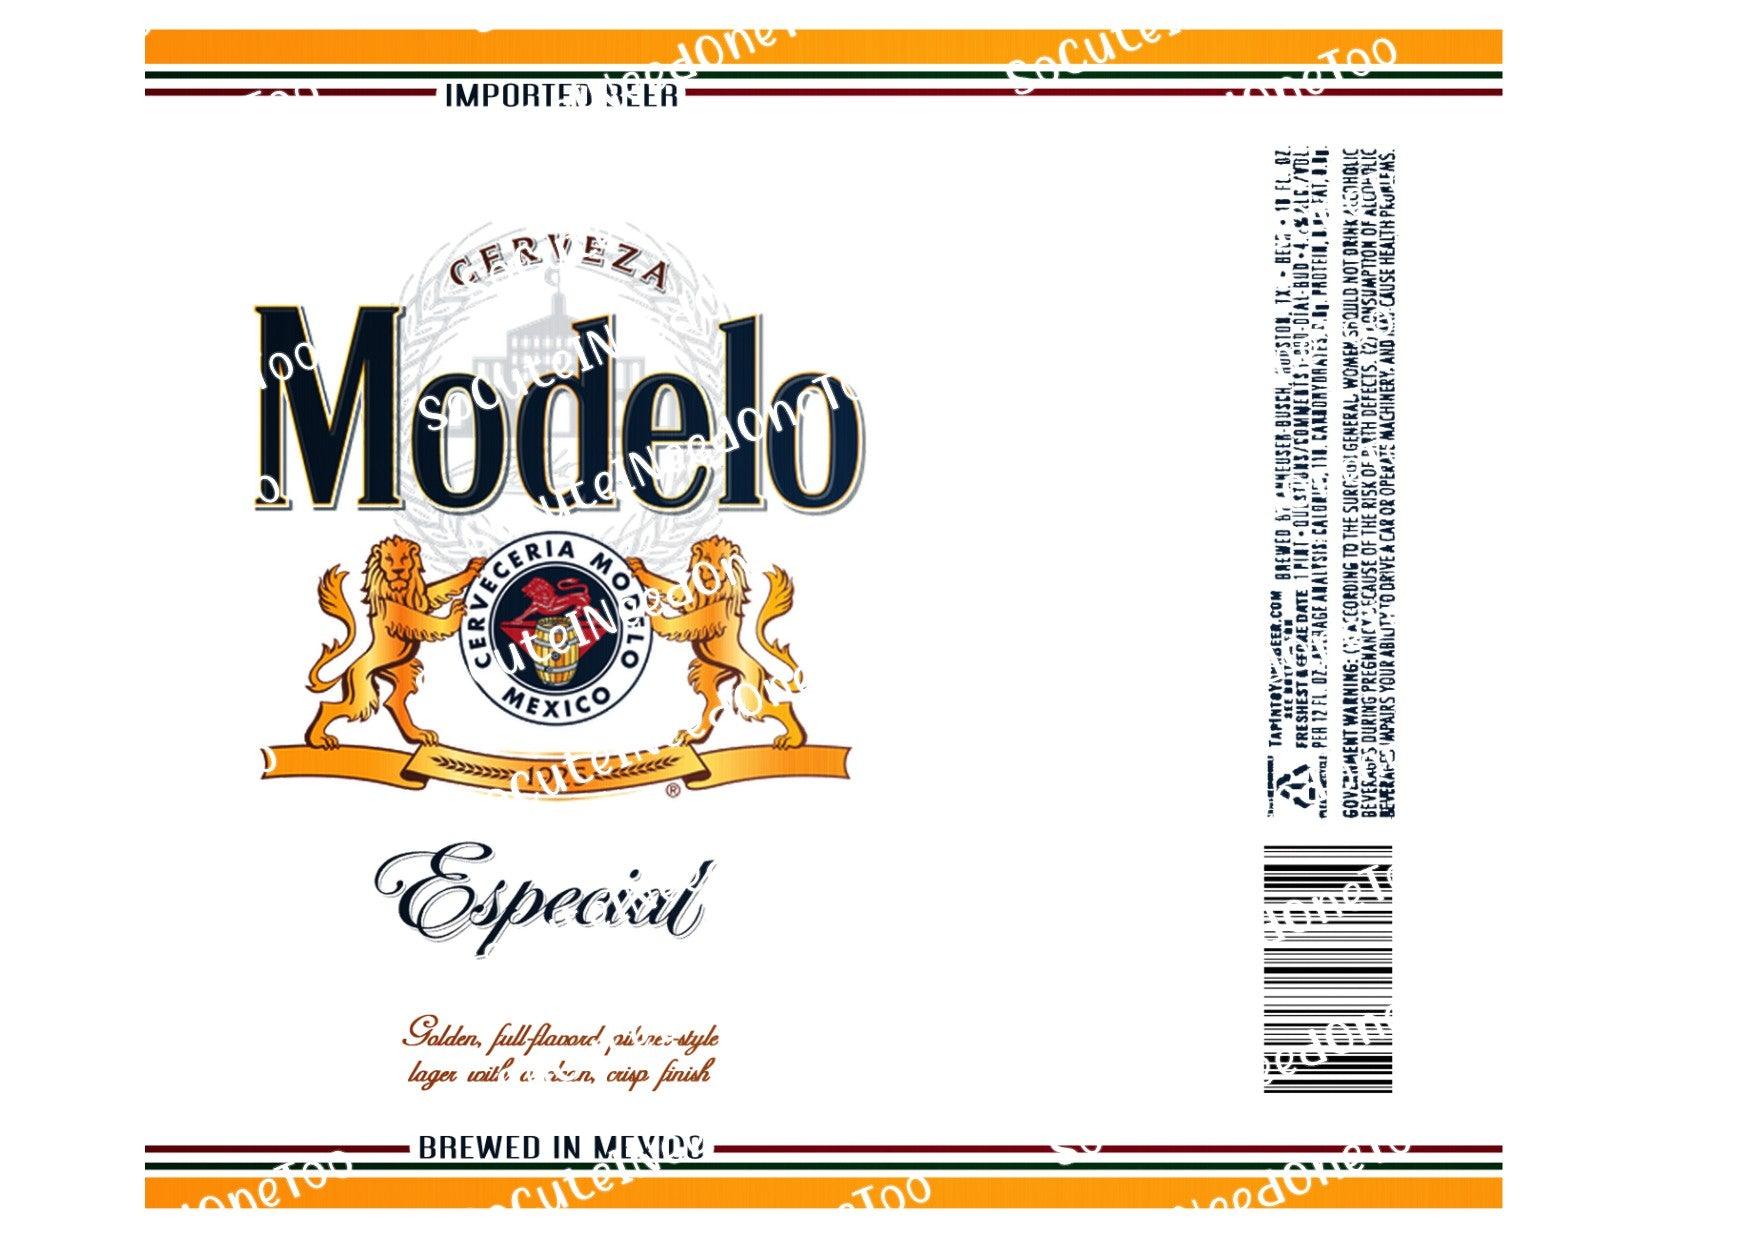 Modelo's Beer Wraps - SoCuteINeedOneToo